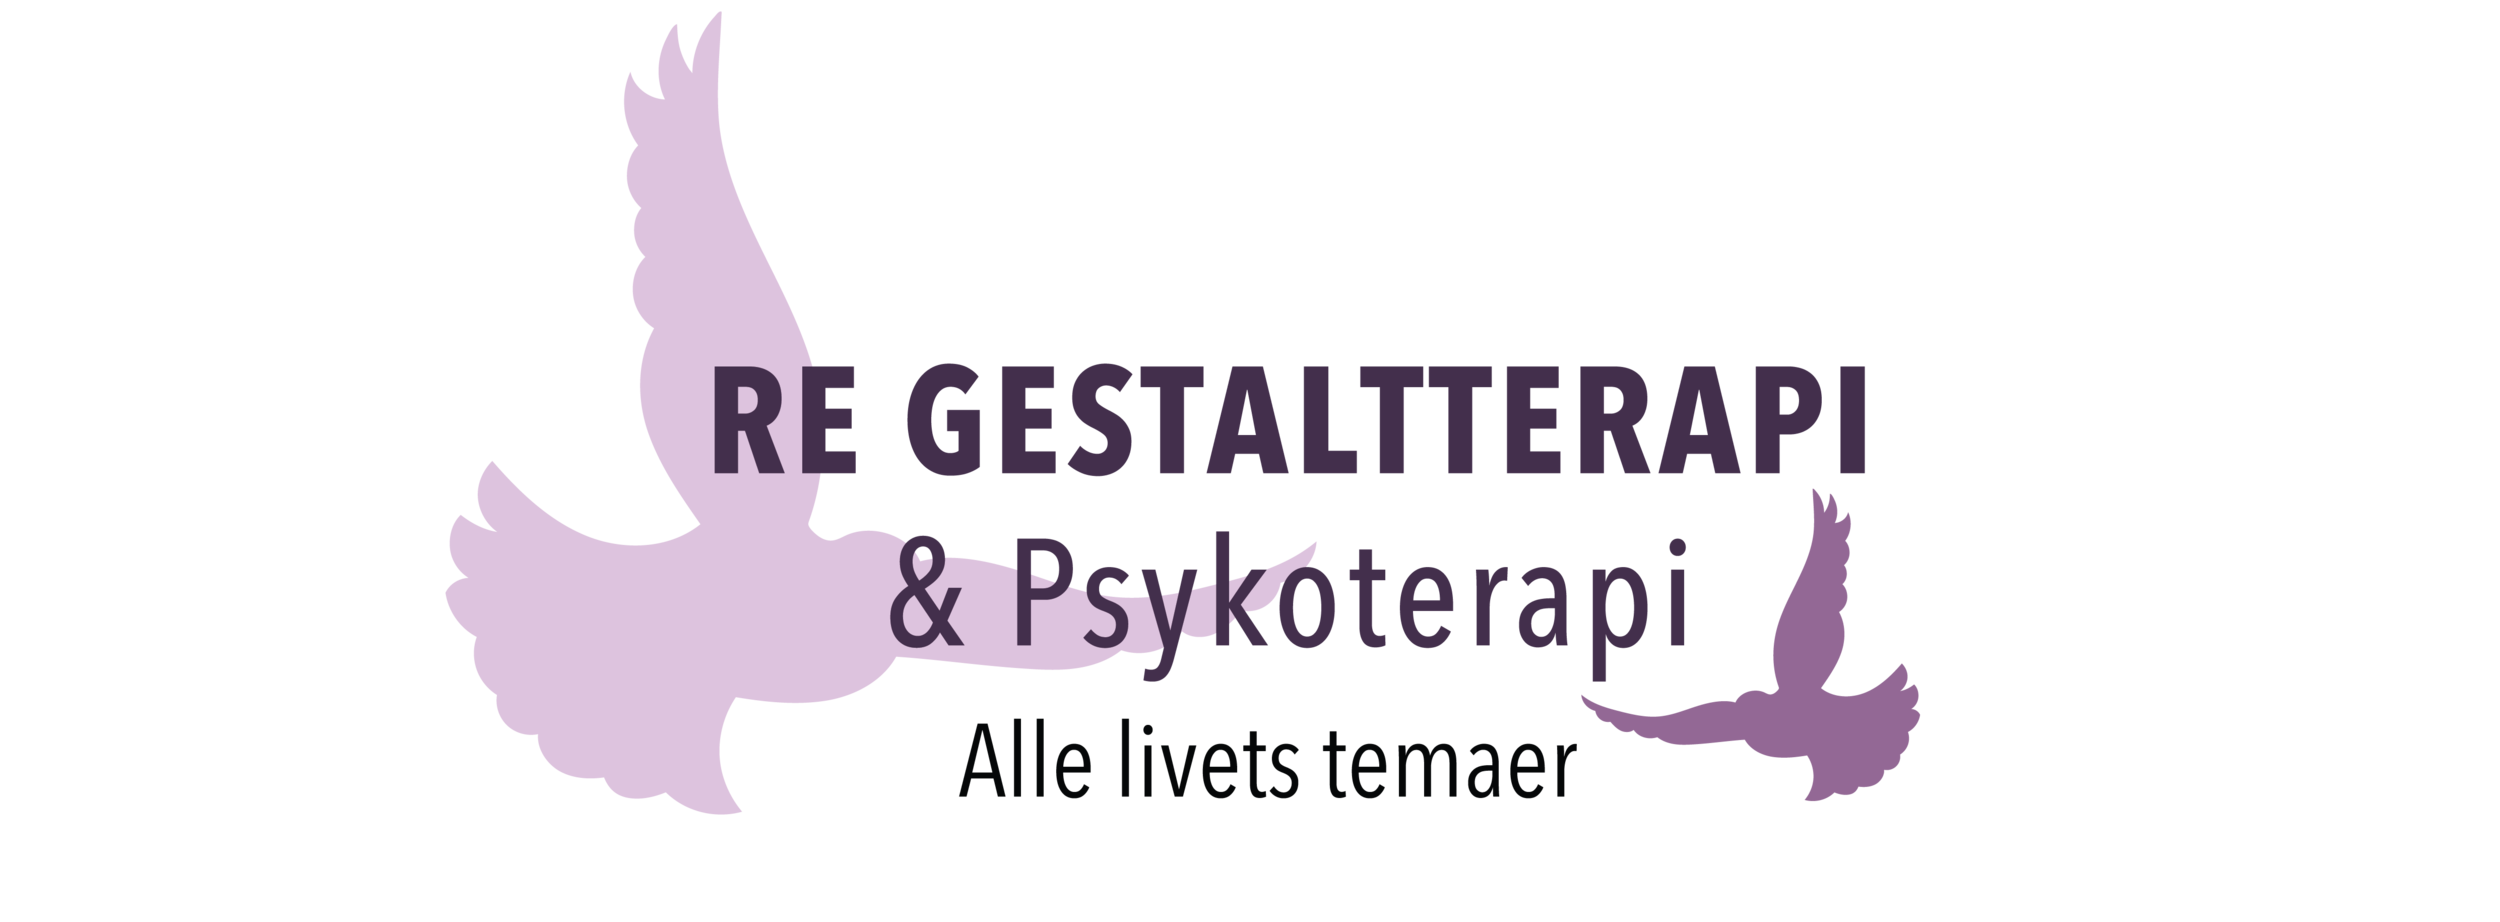 Re Gestaltterapi - Psykoterapi